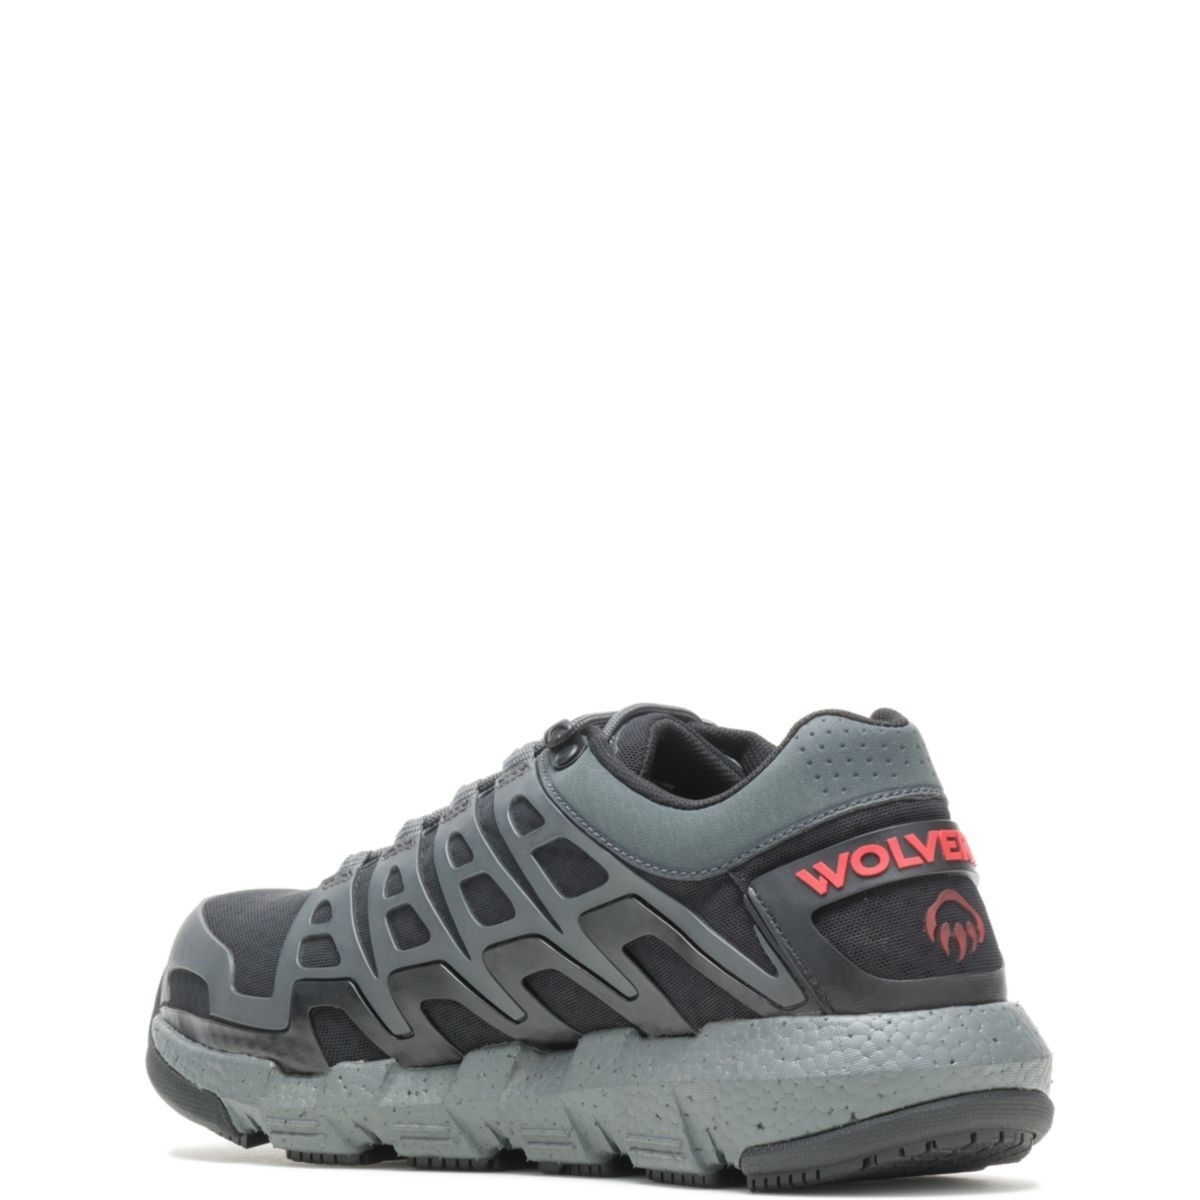 WOLVERINE Men's Rev Vent UltraSpringâ¢ DuraShocksÂ® CarbonMAXÂ® Composite Toe Work Shoe Charcoal - W211016 CHARCOAL - CHARCOAL, 11.5 X-Wide